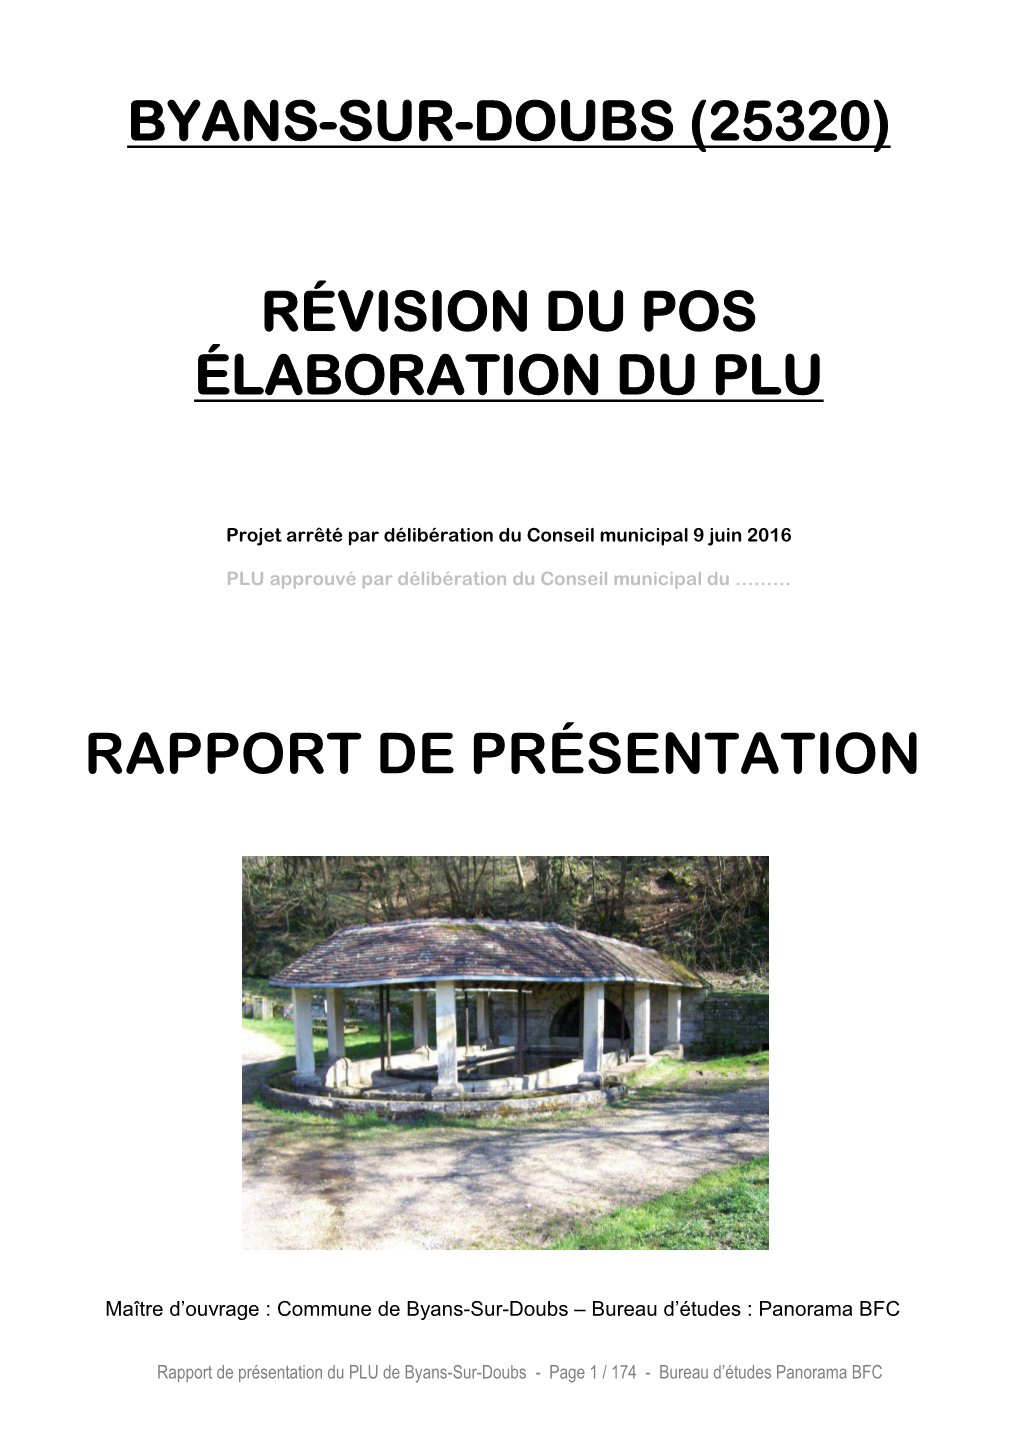 1- Rapport De Présentation